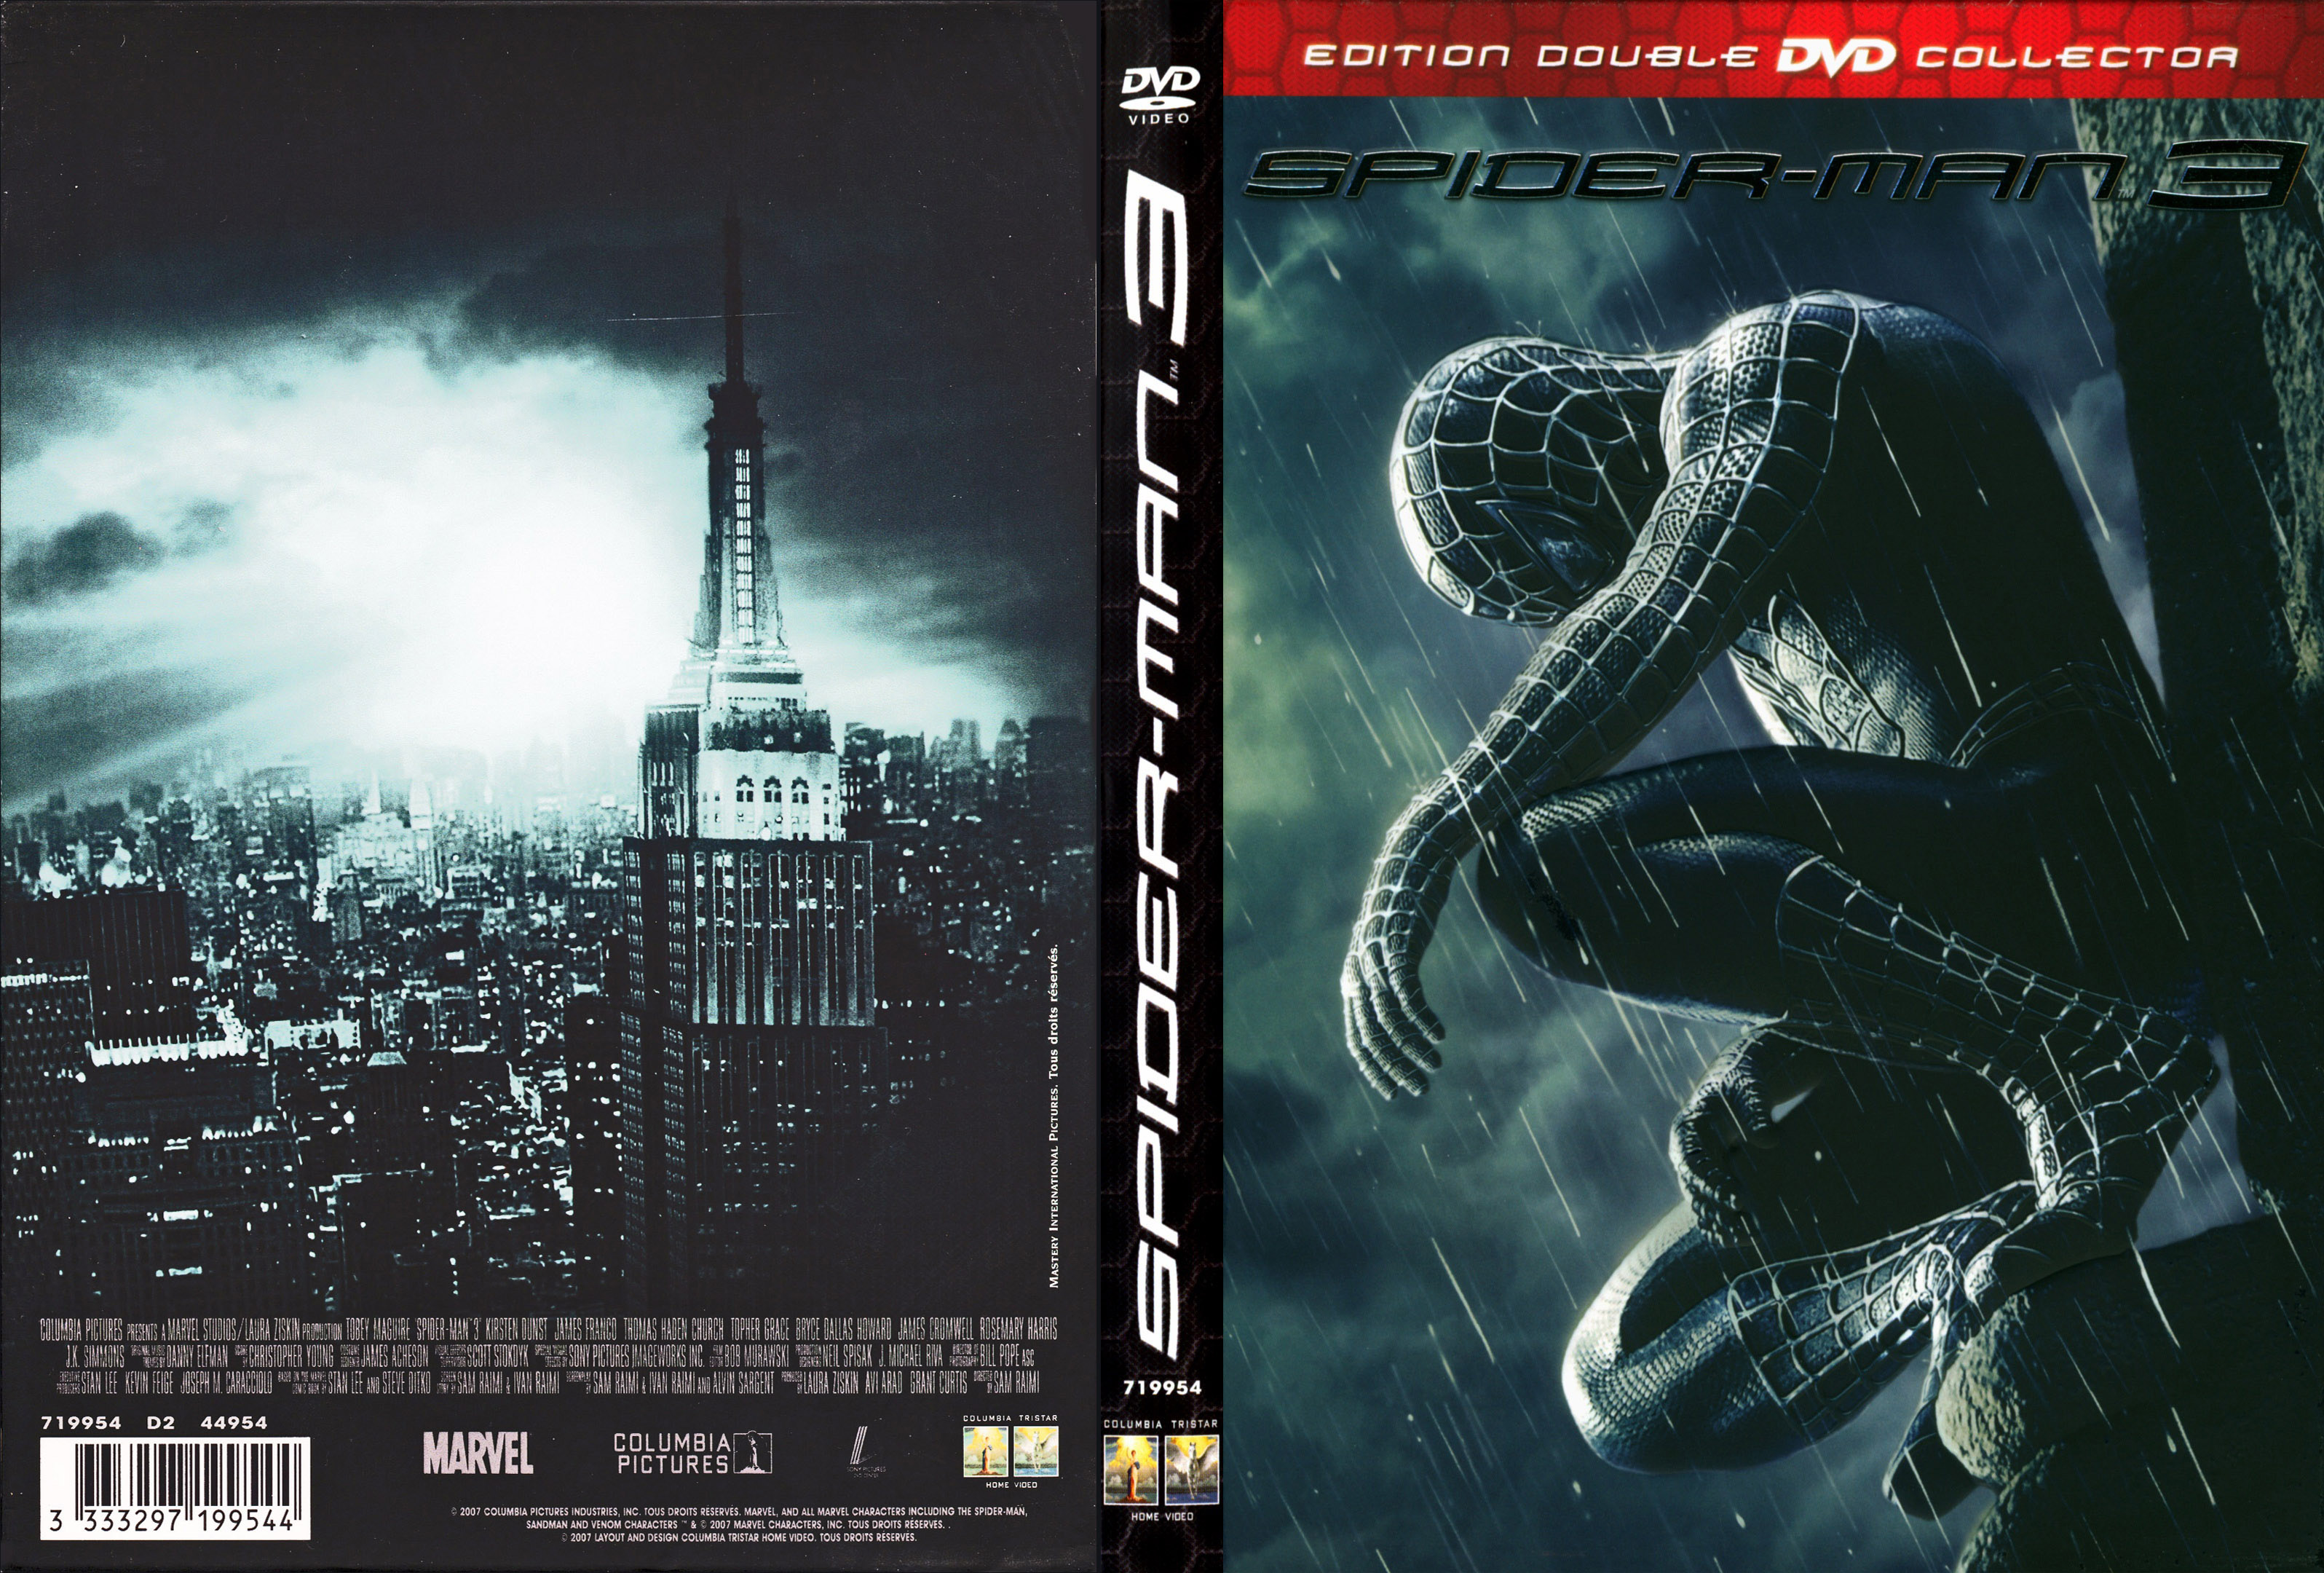 Jaquette DVD Spider-man 3